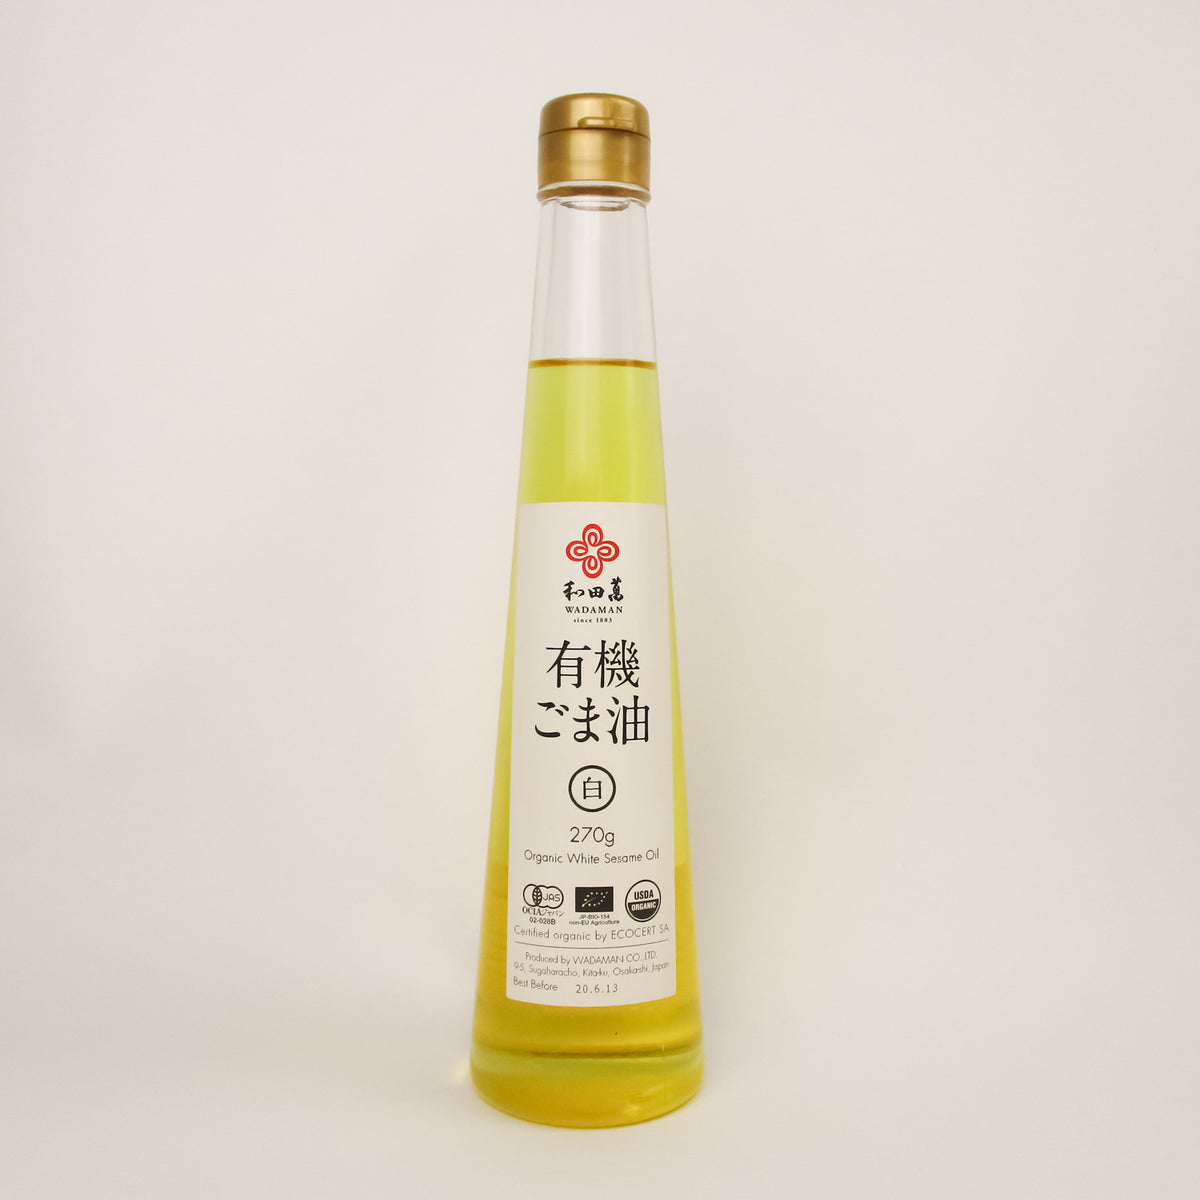 <!--3150--!>Sesame Oil - Organic White